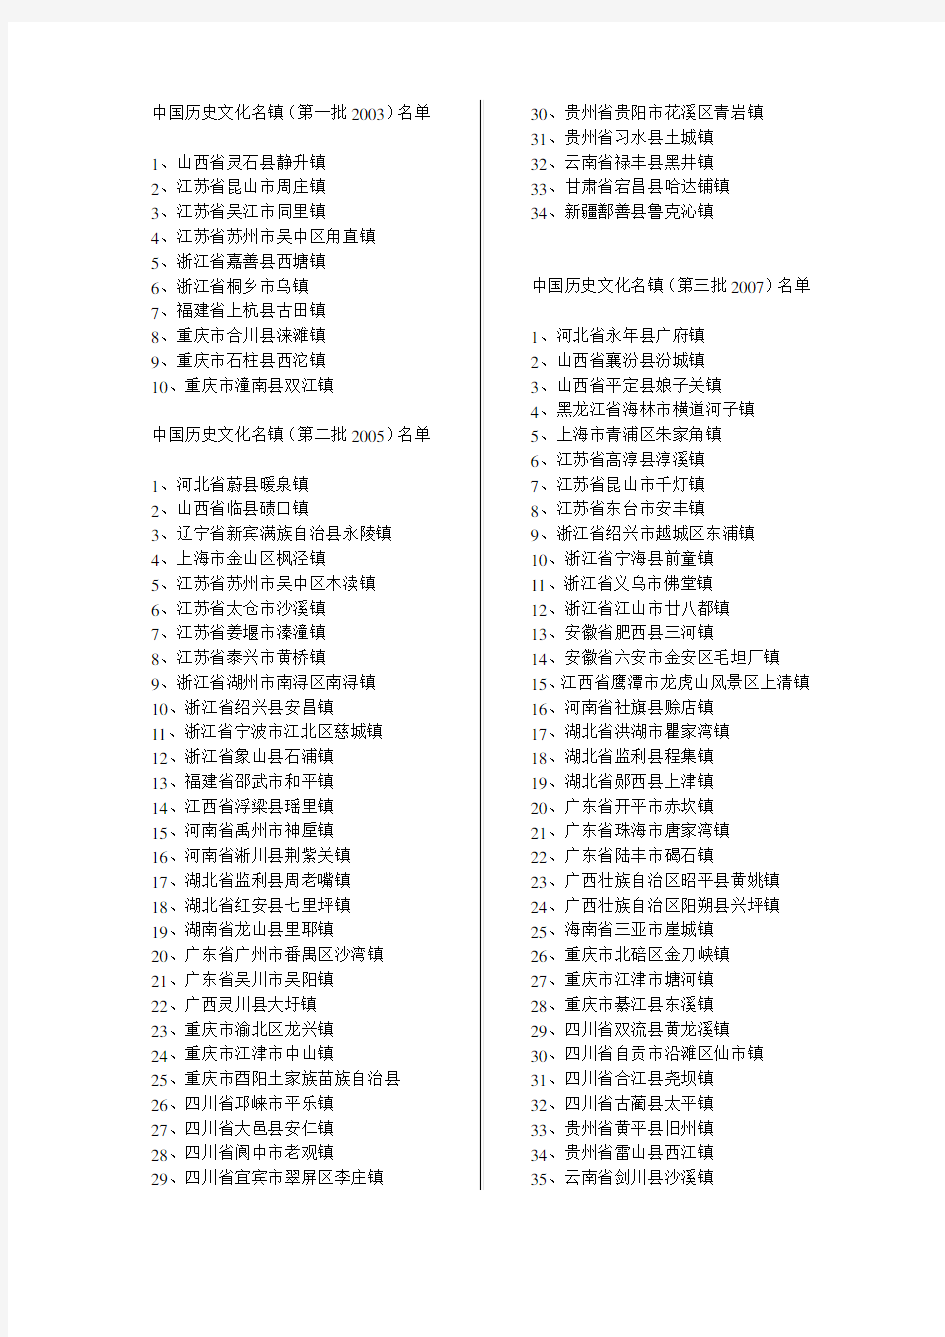 中国历史文化名镇名录(至2014)